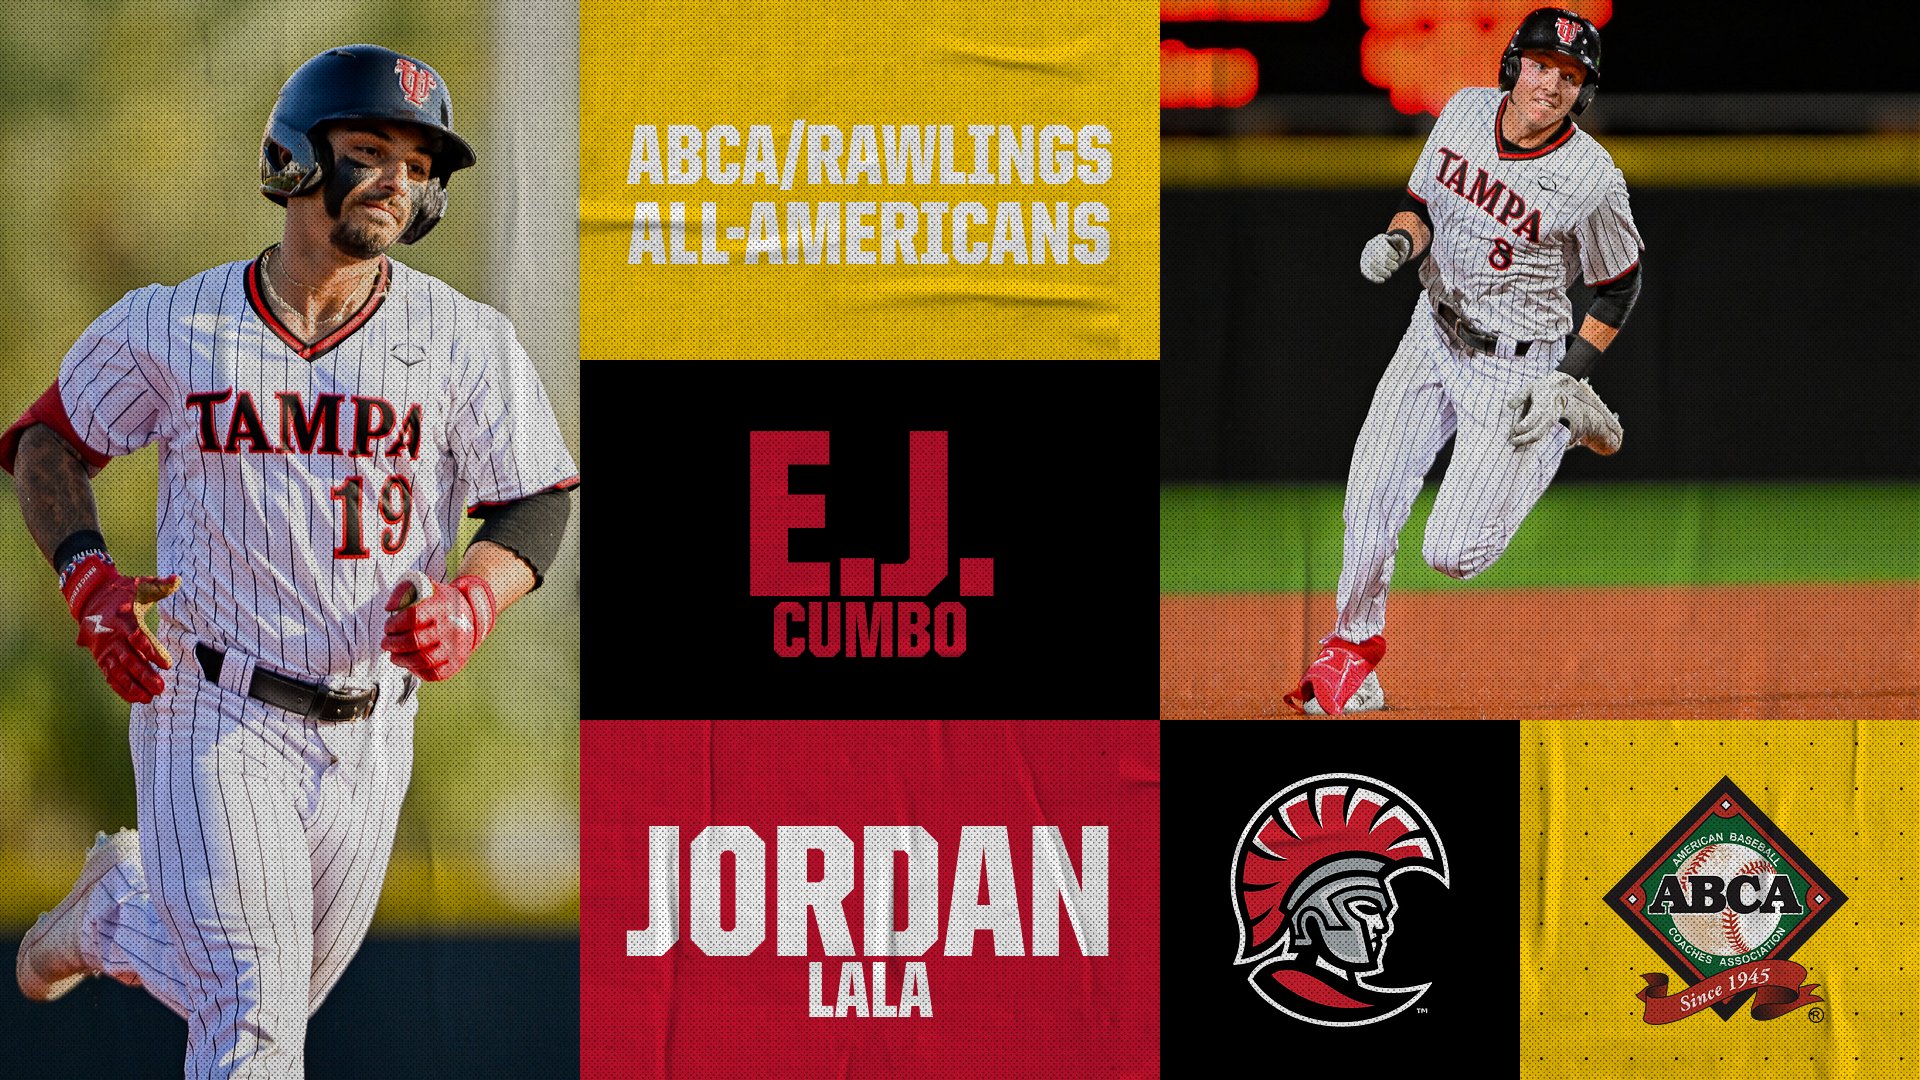 2023 ABCA/Rawlings All-Americans E.J. Cumbo and Jordan Lala